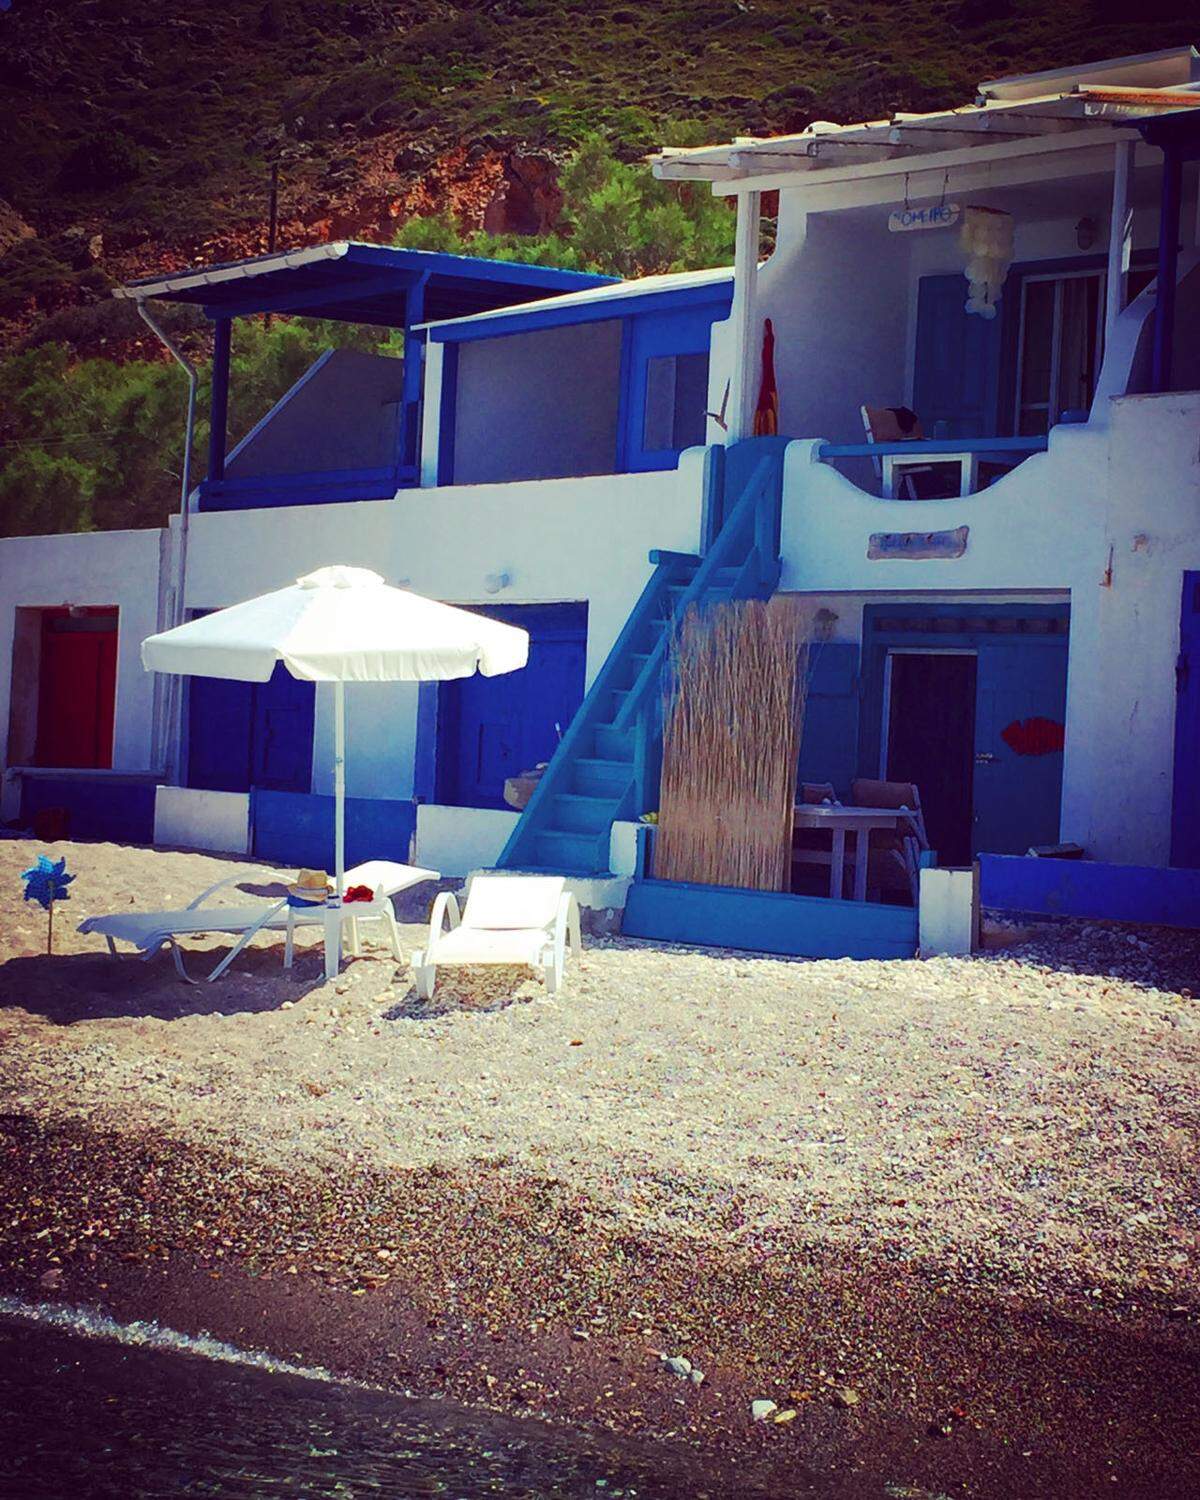 Auf Platz eins landet das "Pradeiso" Strand-Bungalow Apartment in Milos, Griechenland. Der gemütliche Bungalow war ursprünglich ein Bootshaus und befindet sich deshalb nur einen Steinwurf vom Meer entfernt.